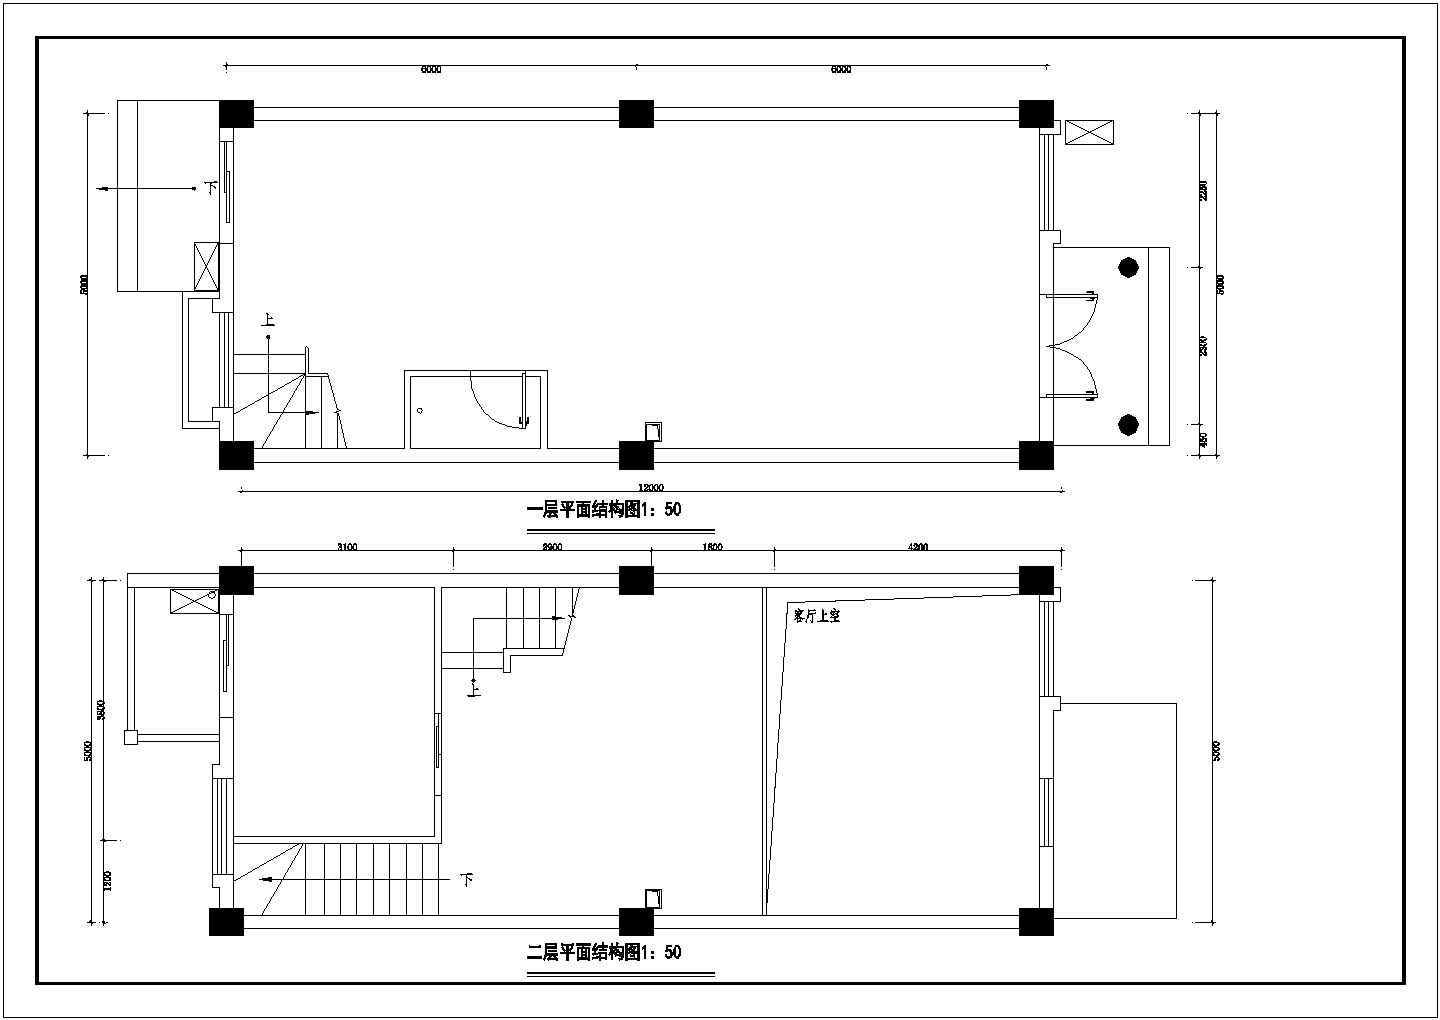 大唐世家样板别墅设计图(CAD)